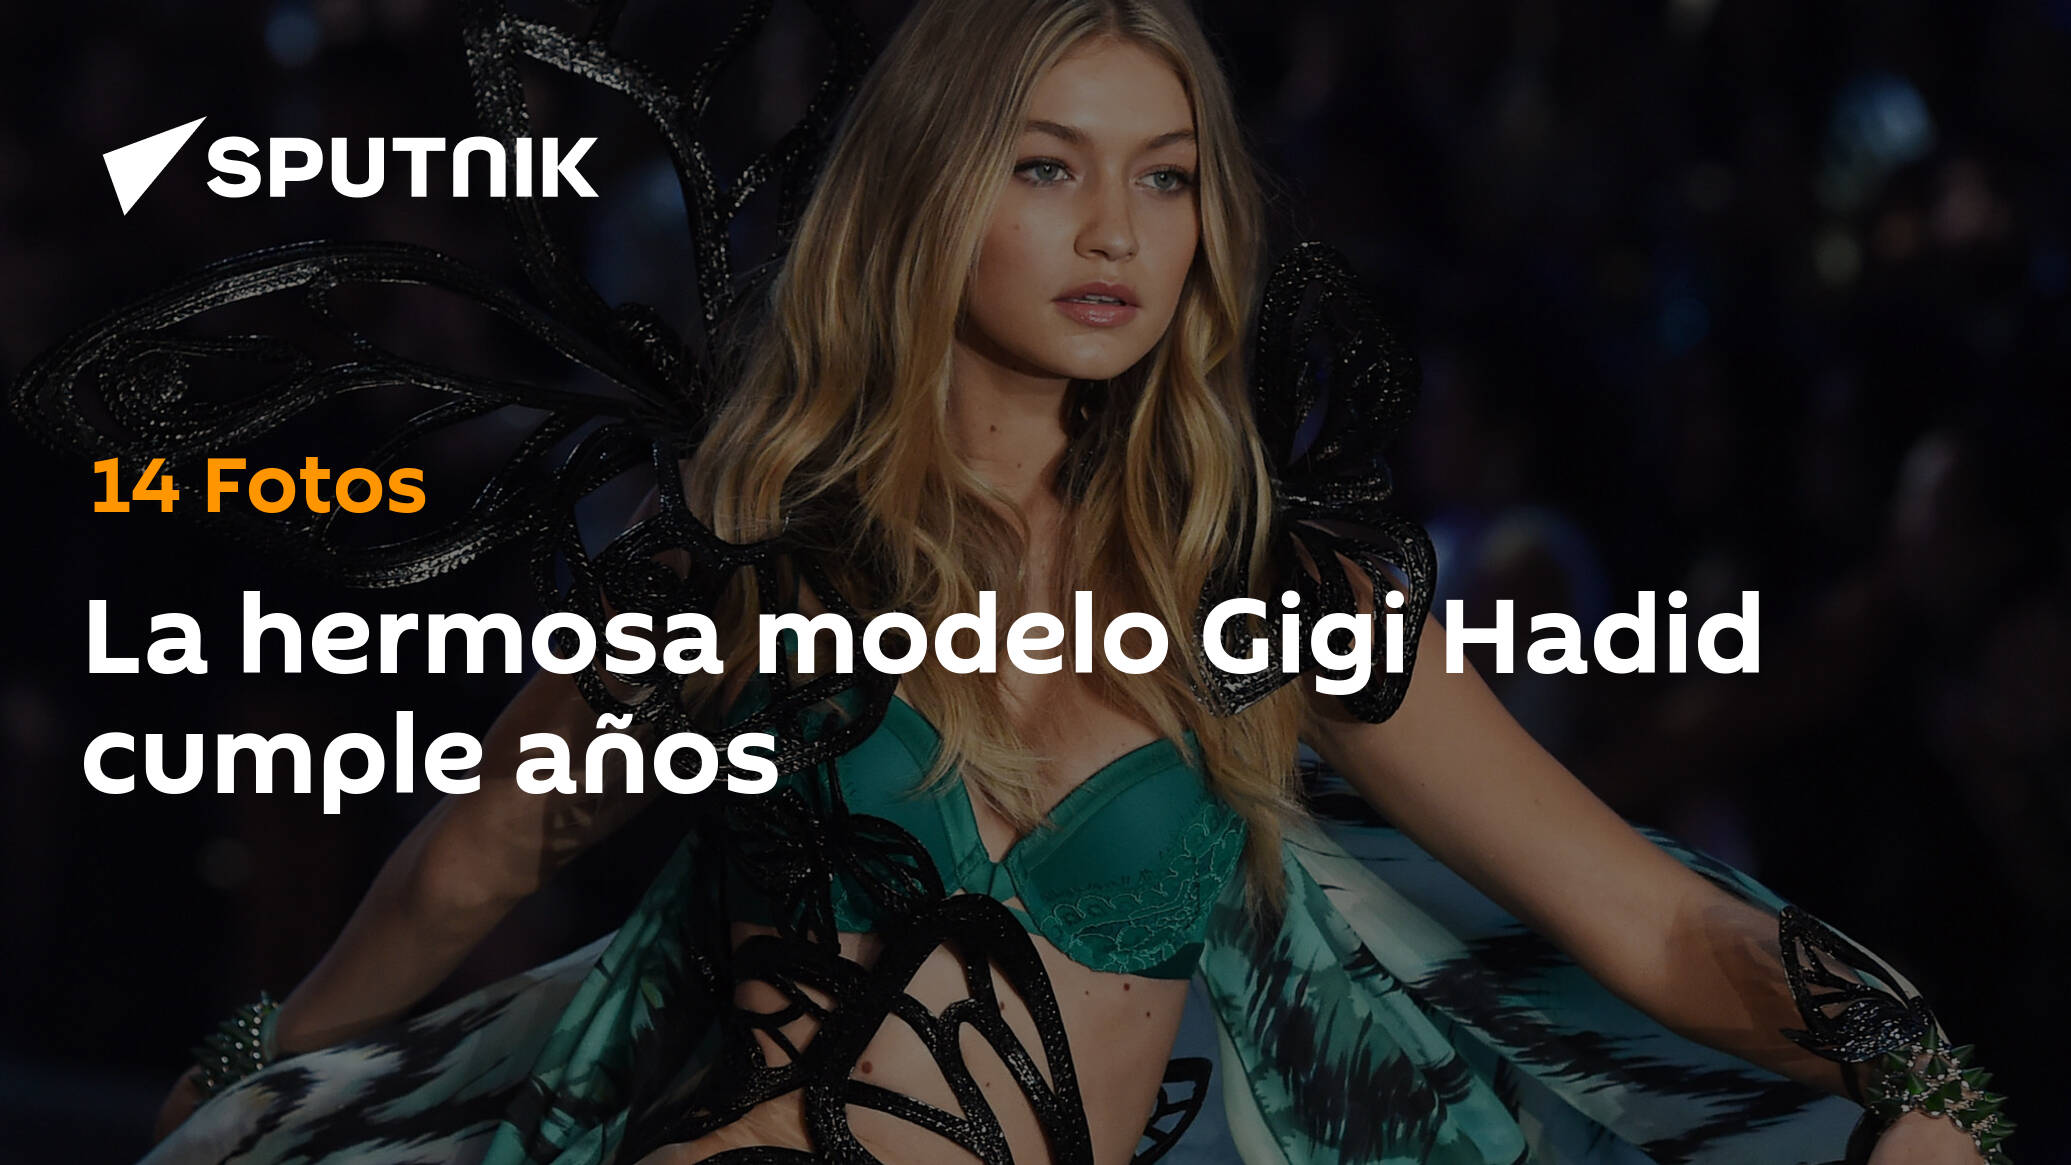 La hermosa modelo Gigi Hadid cumple años , Sputnik Mundo